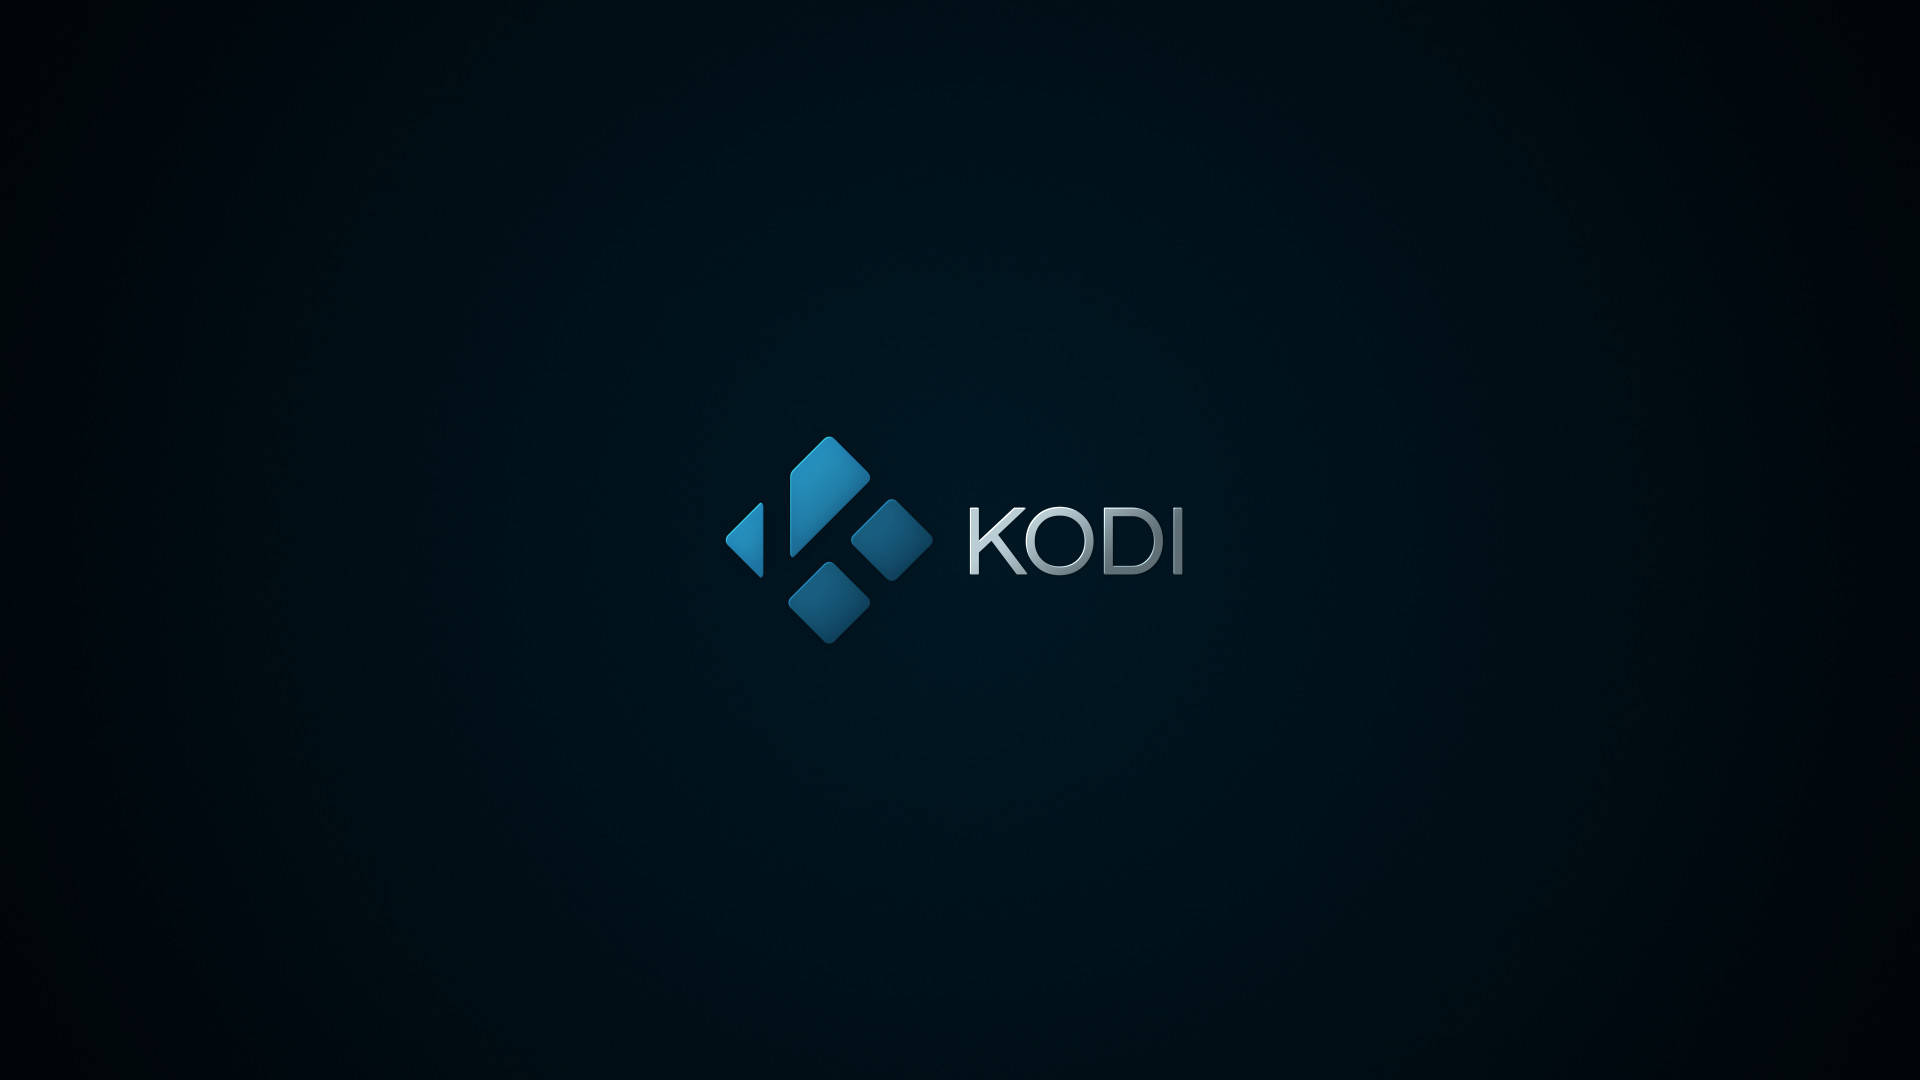 Kodi Community Forum - Kodi fanart and wallpaper